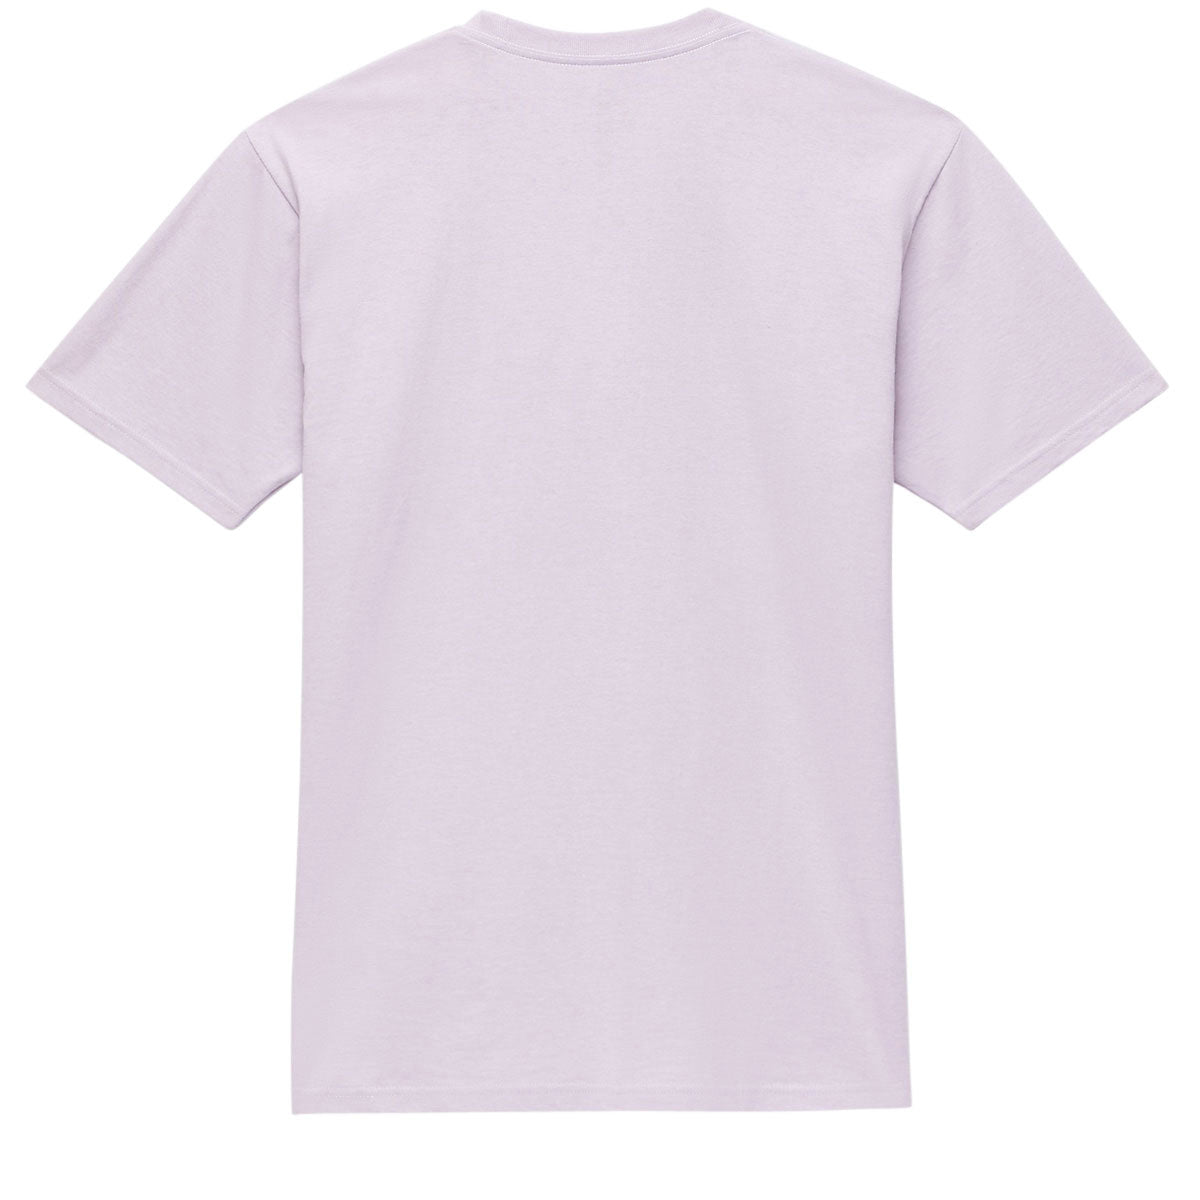 Vans Lower Corecase T-Shirt - Lavender Frost image 4